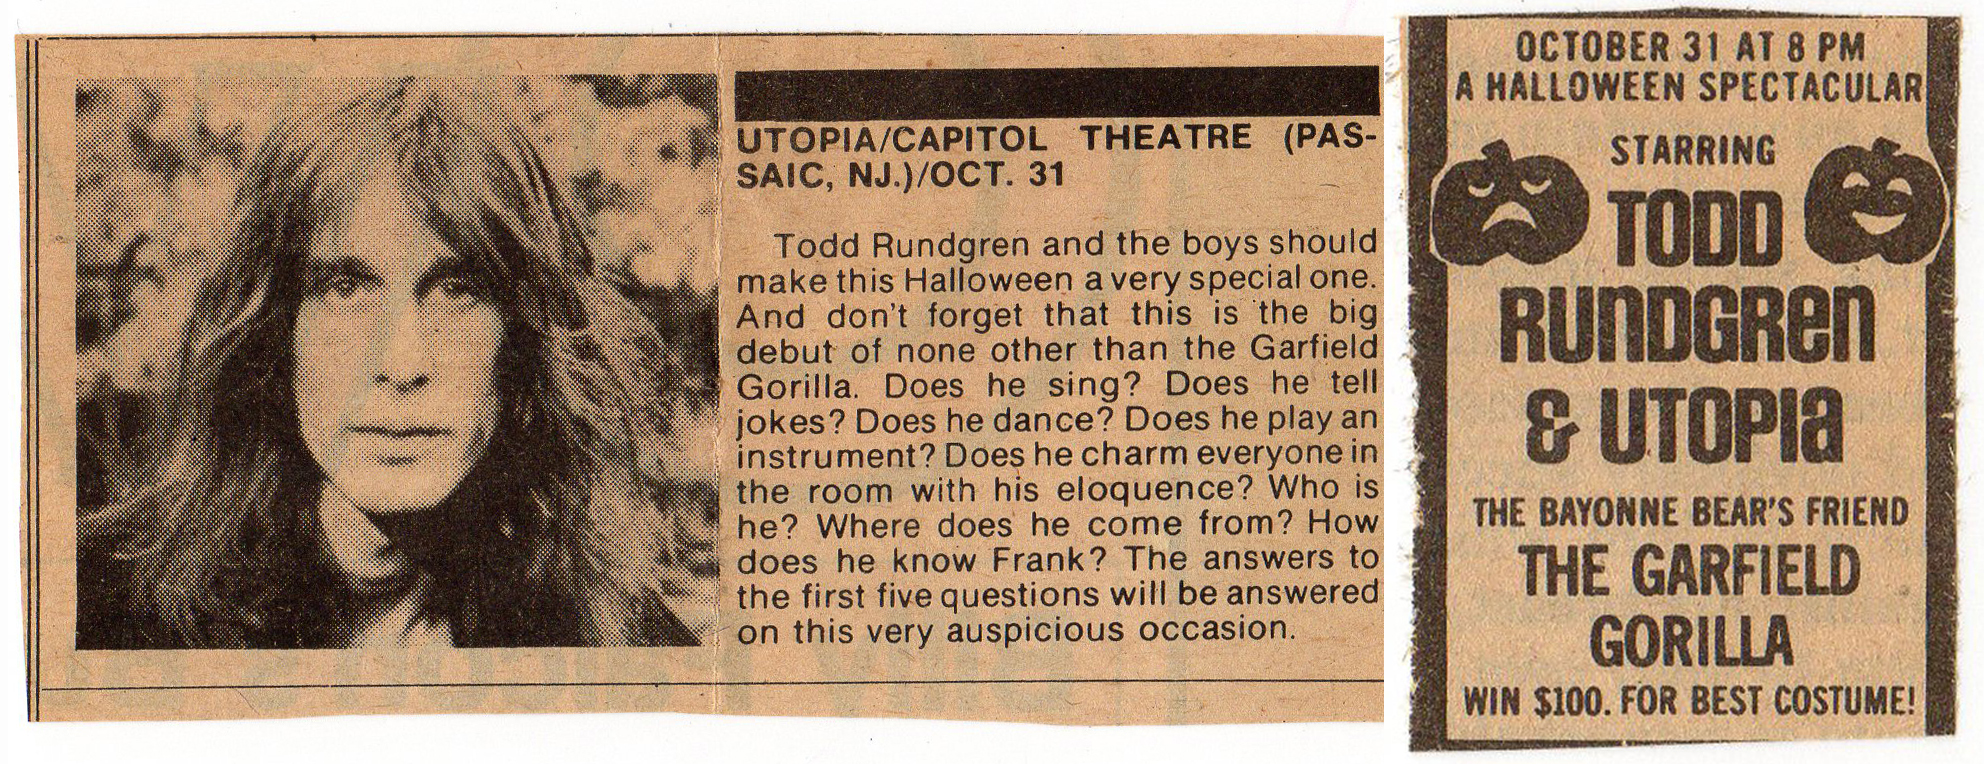 ToddRundgren1979-10-31CapitalTheaterPassiacNJ.jpg